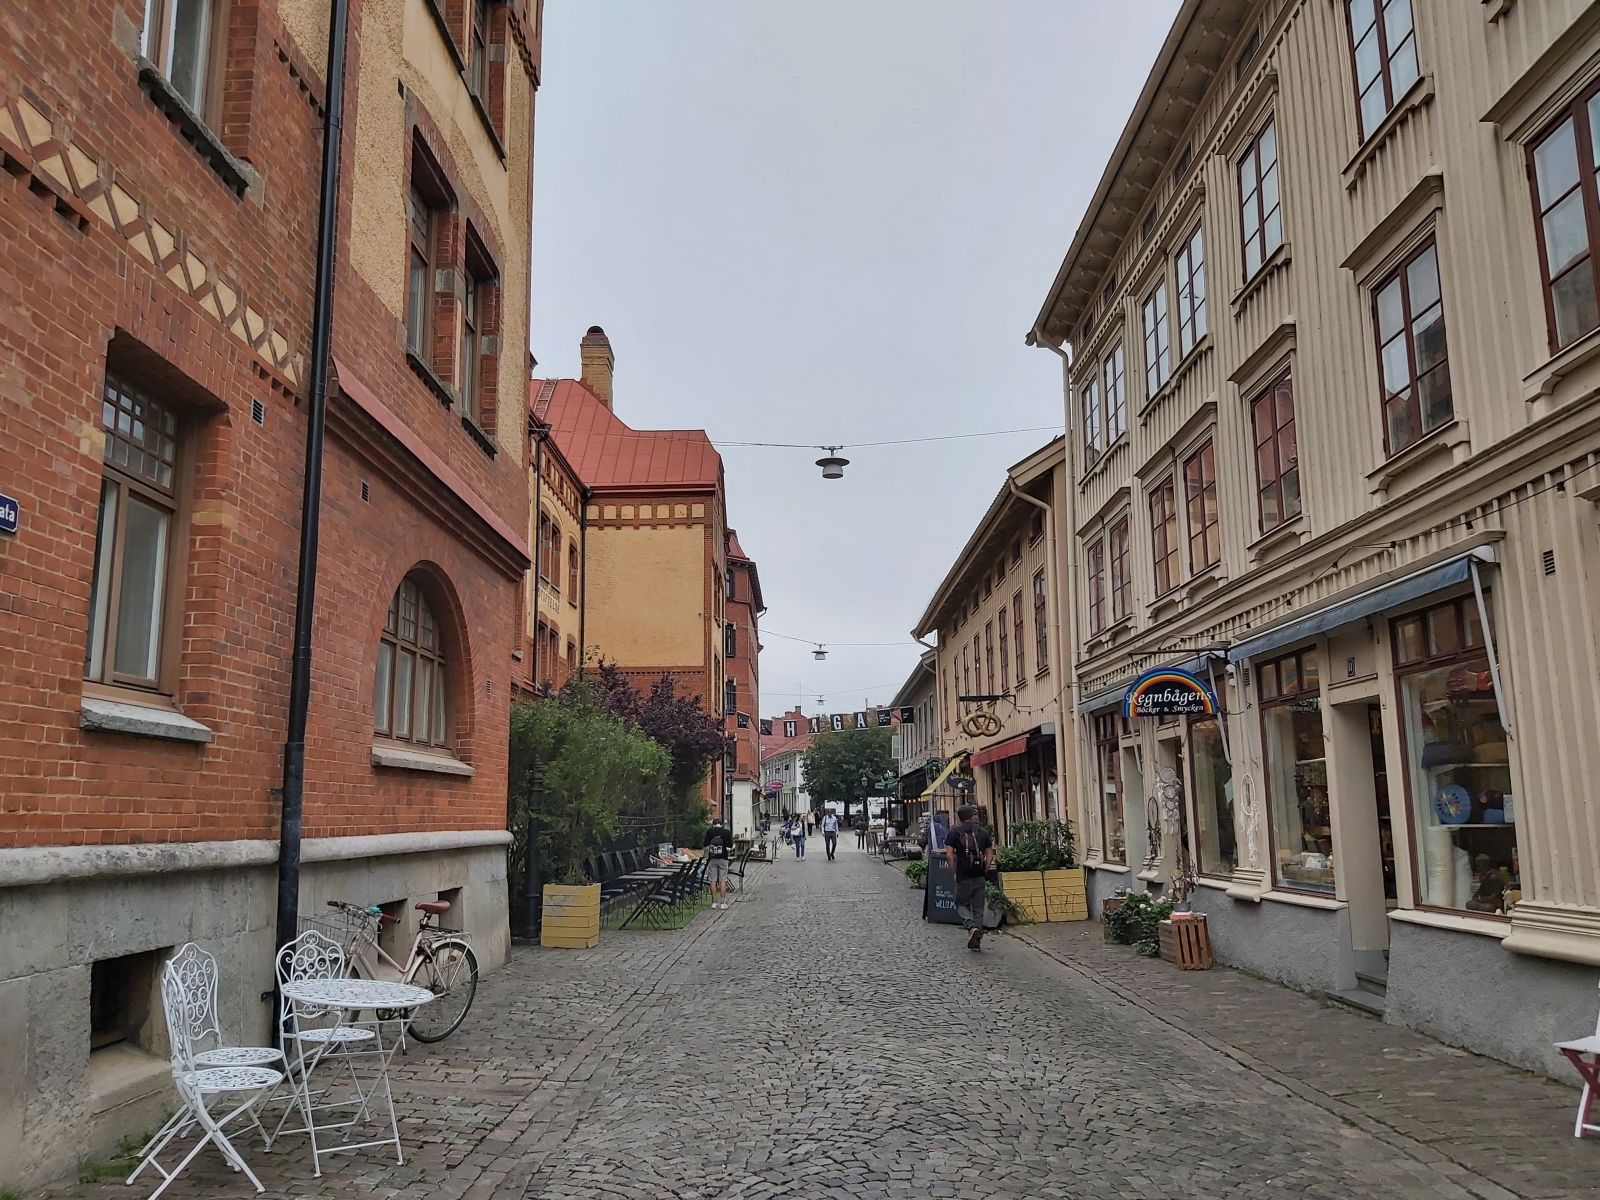 Haga - ein einzigartiges Stadtviertel Göteborgs